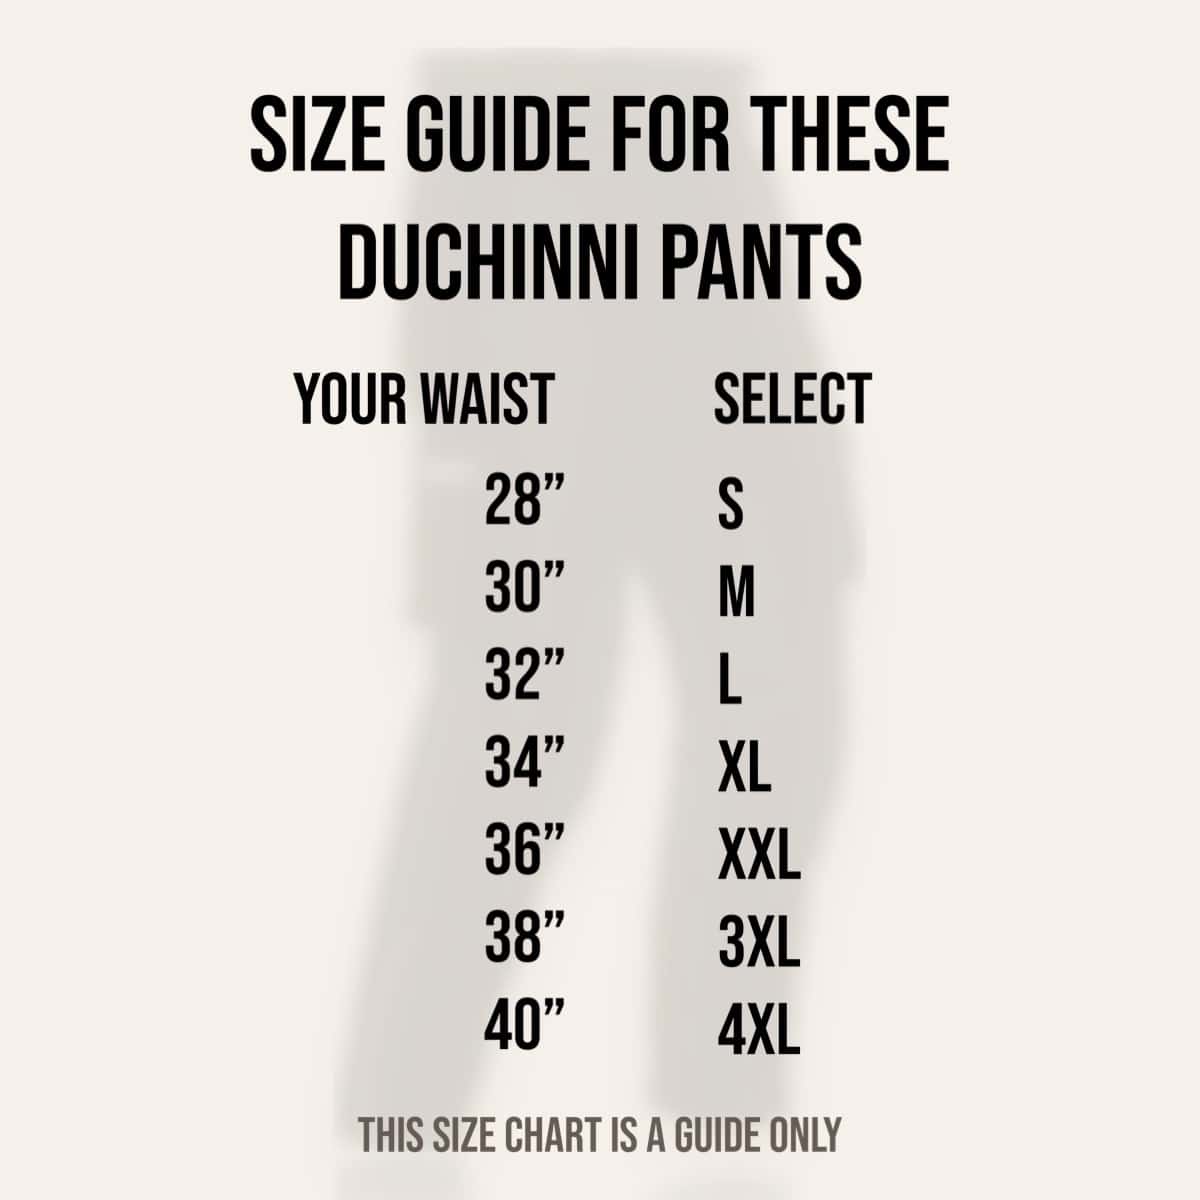 Duchinni Pacific Size Guide